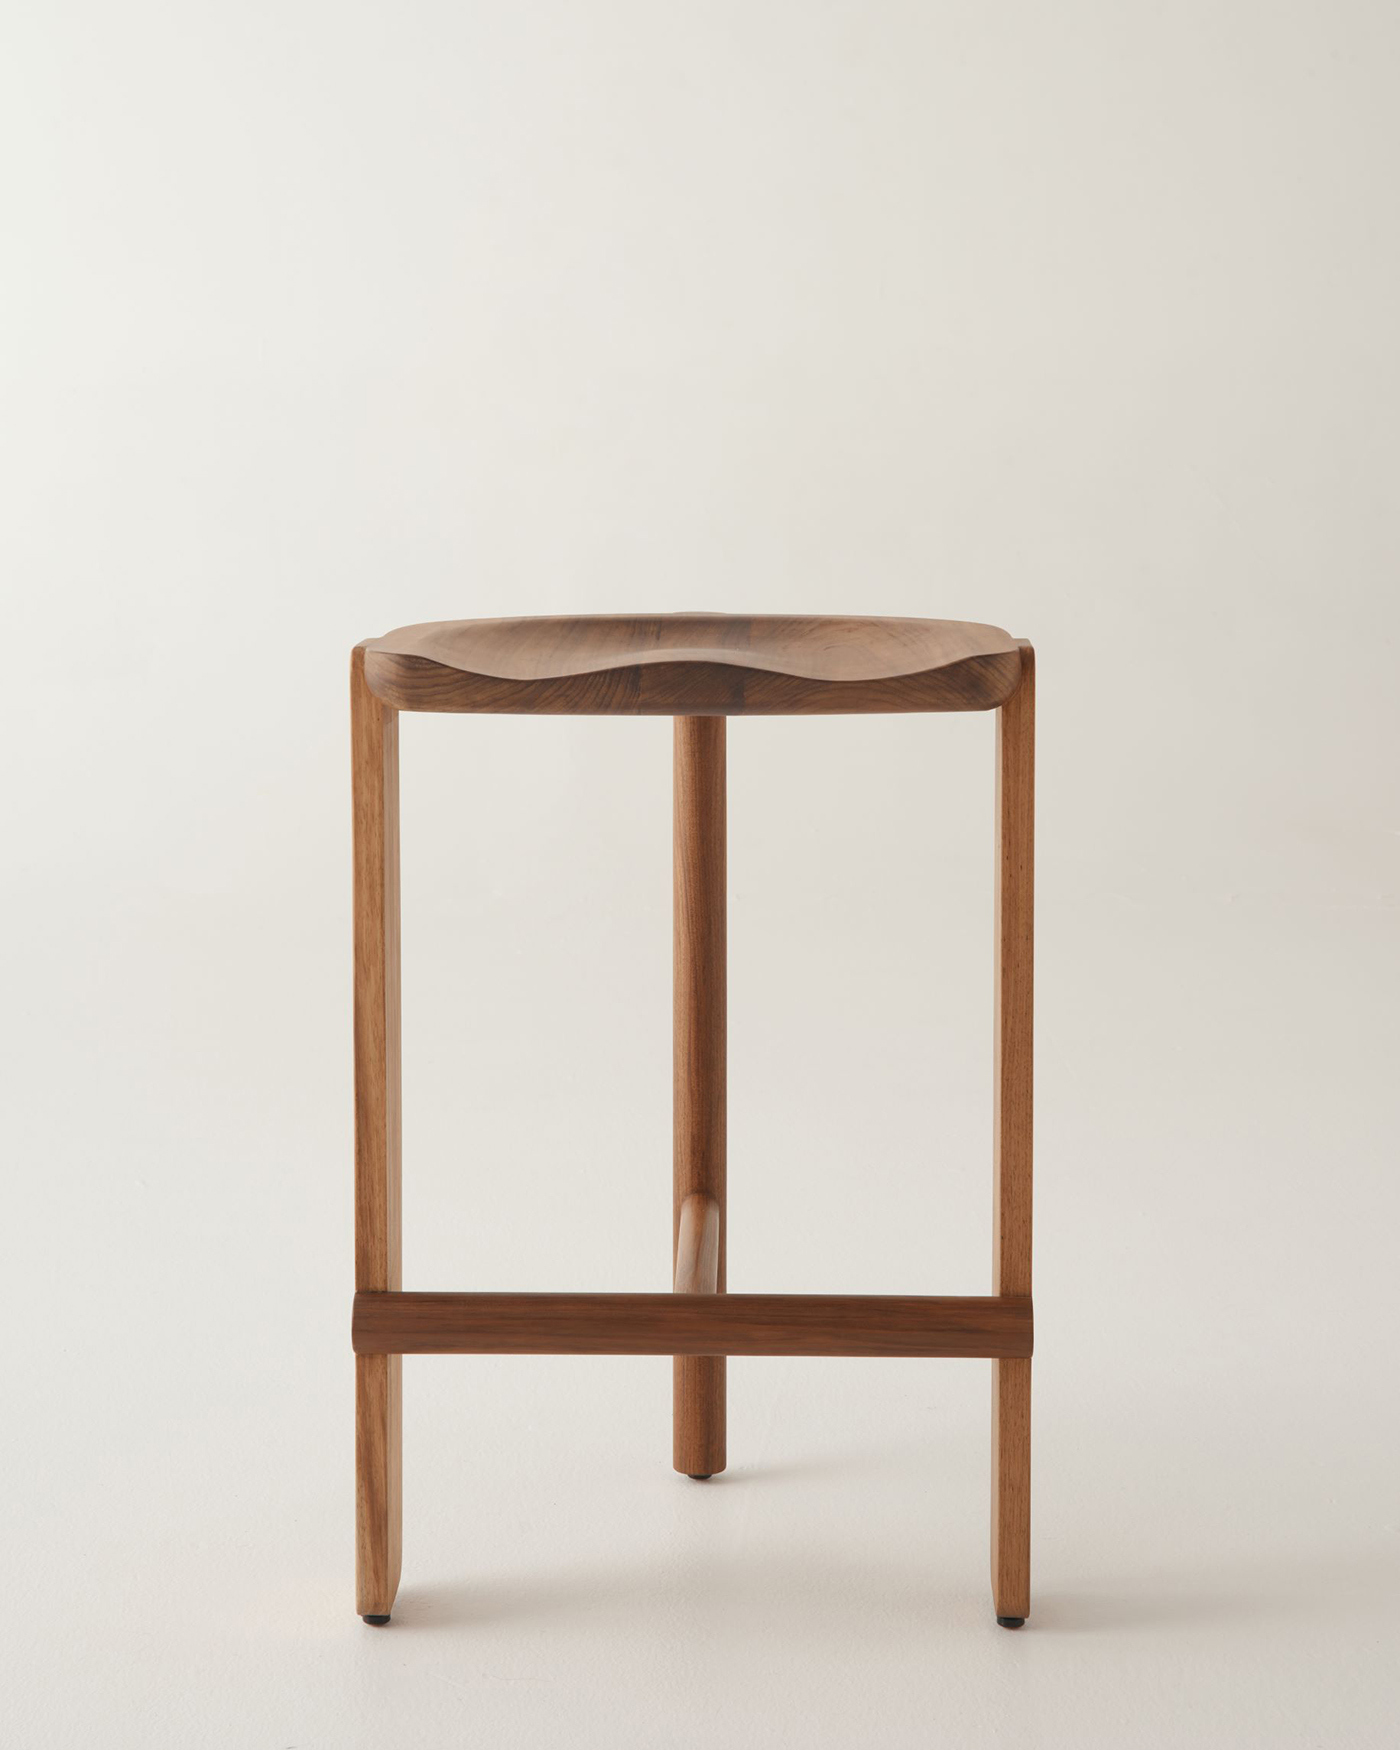 Furniture by Daniel Boddam 6